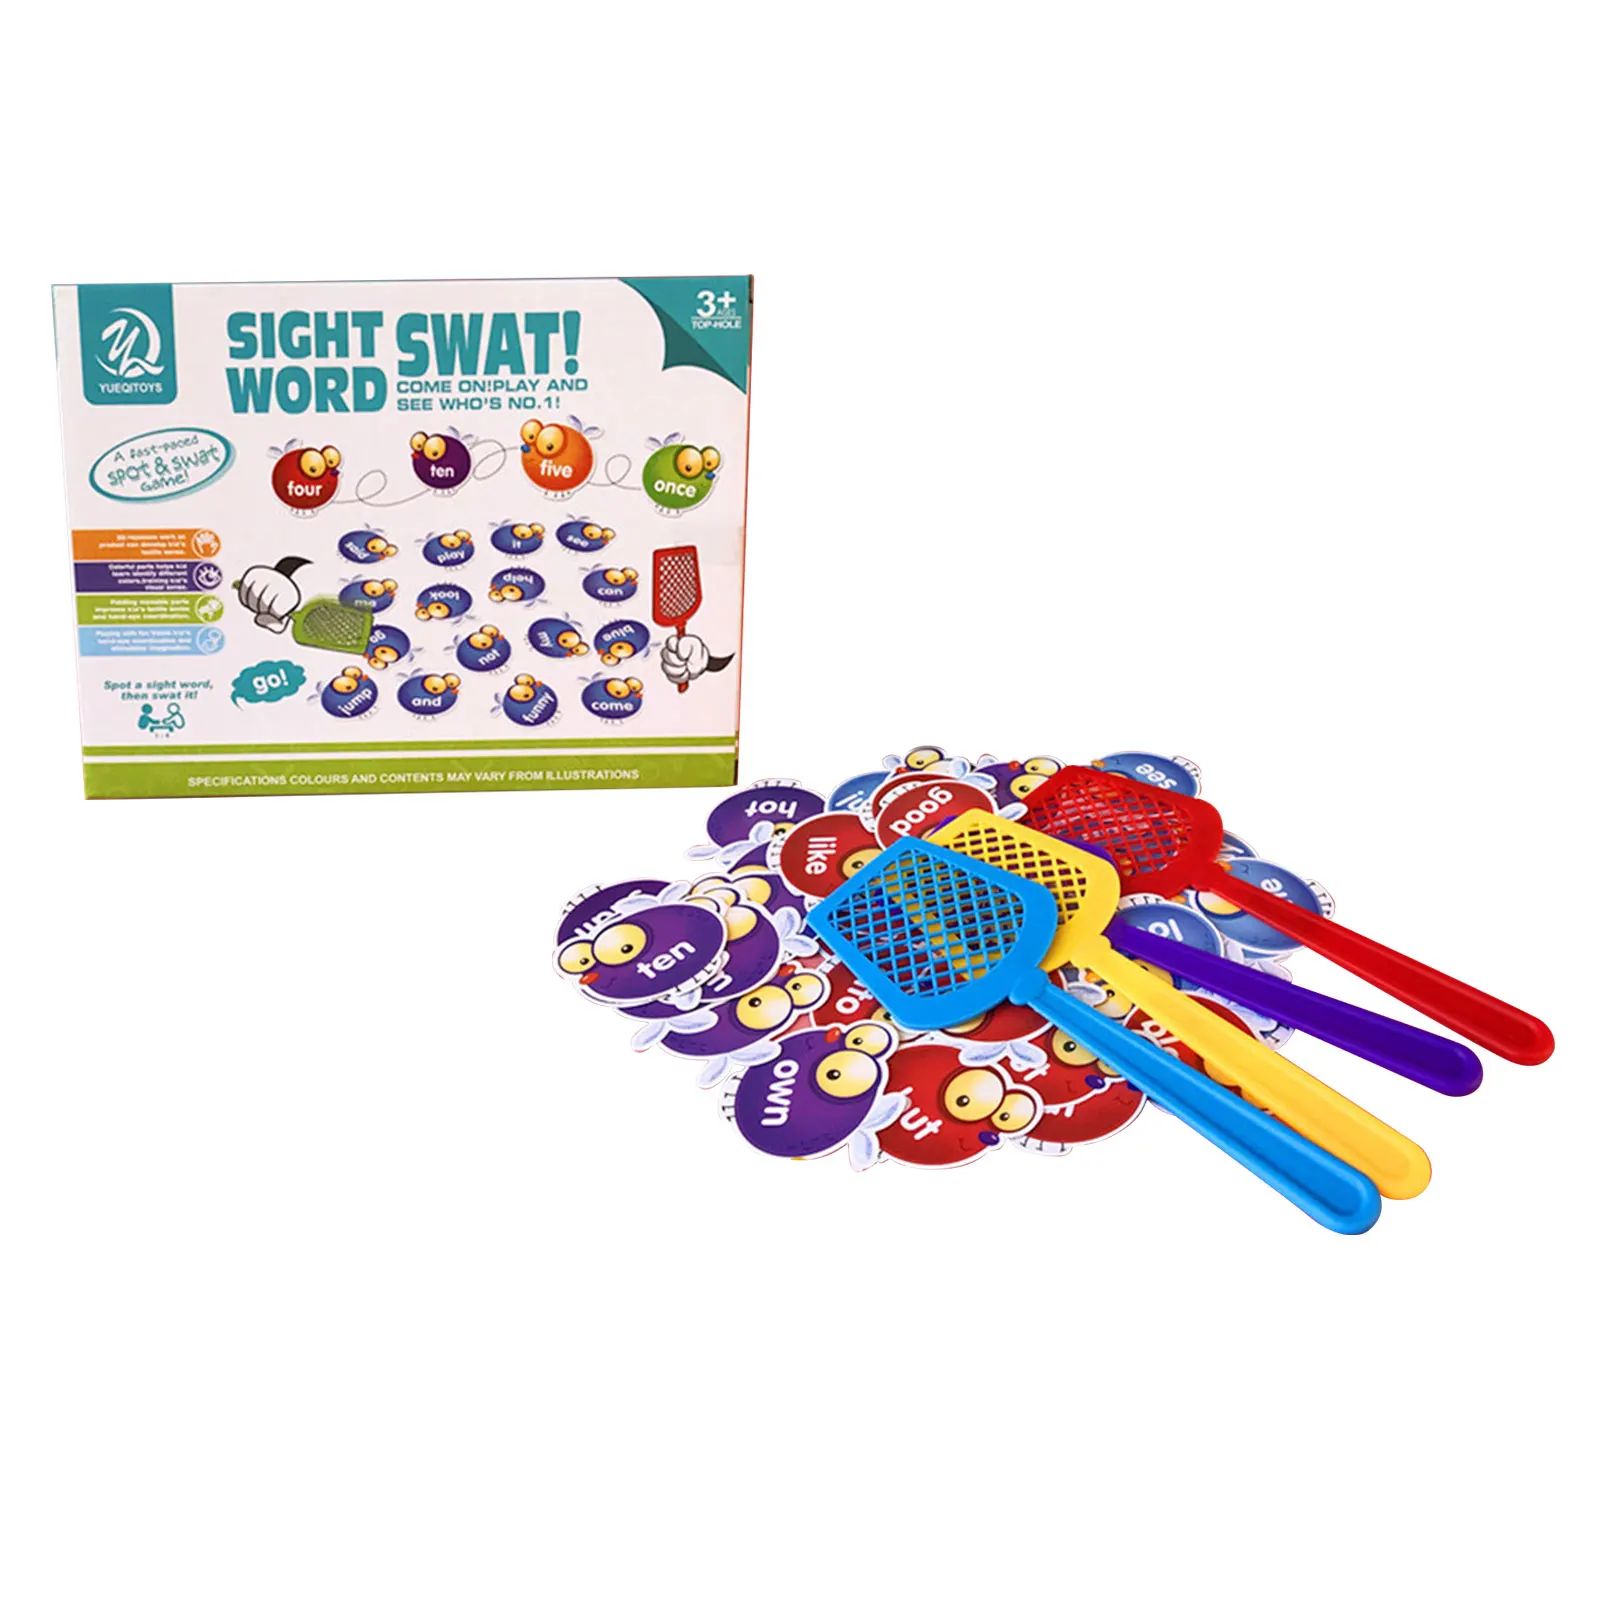 

Креативные игрушки Swat A Fly, Обучающие слова, настольная игра, Детская развивающая игрушка, зрение, слова Swat, товары для детского сада, интерак...